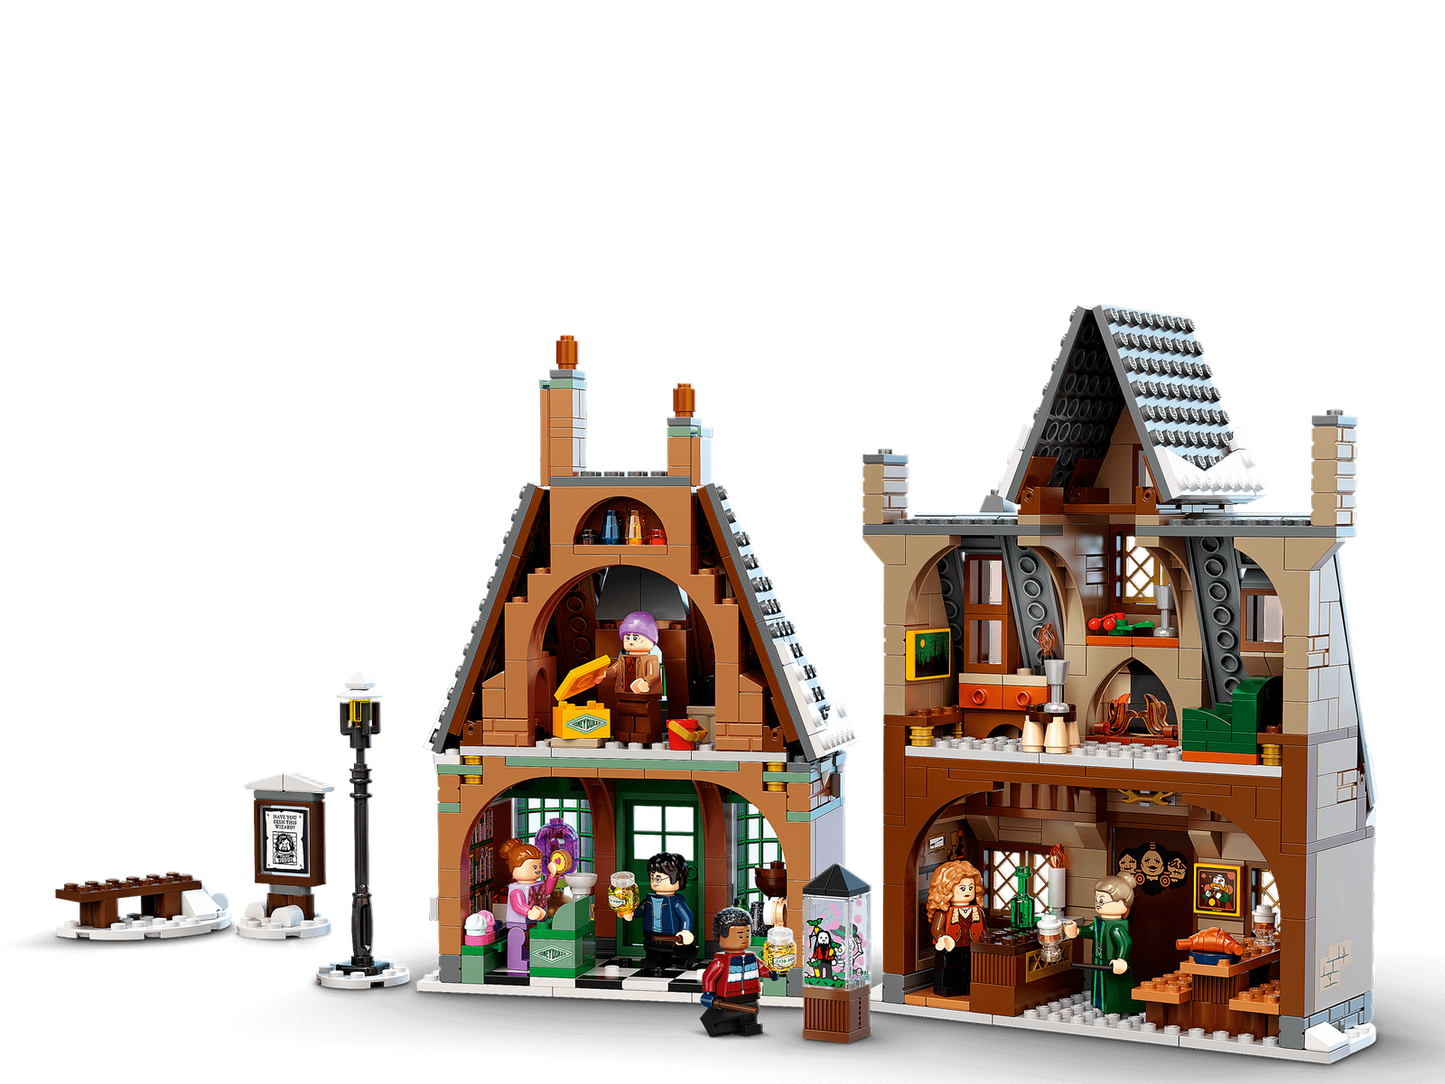 Lego Harry Potter Hogsmeade Village Visit 76388